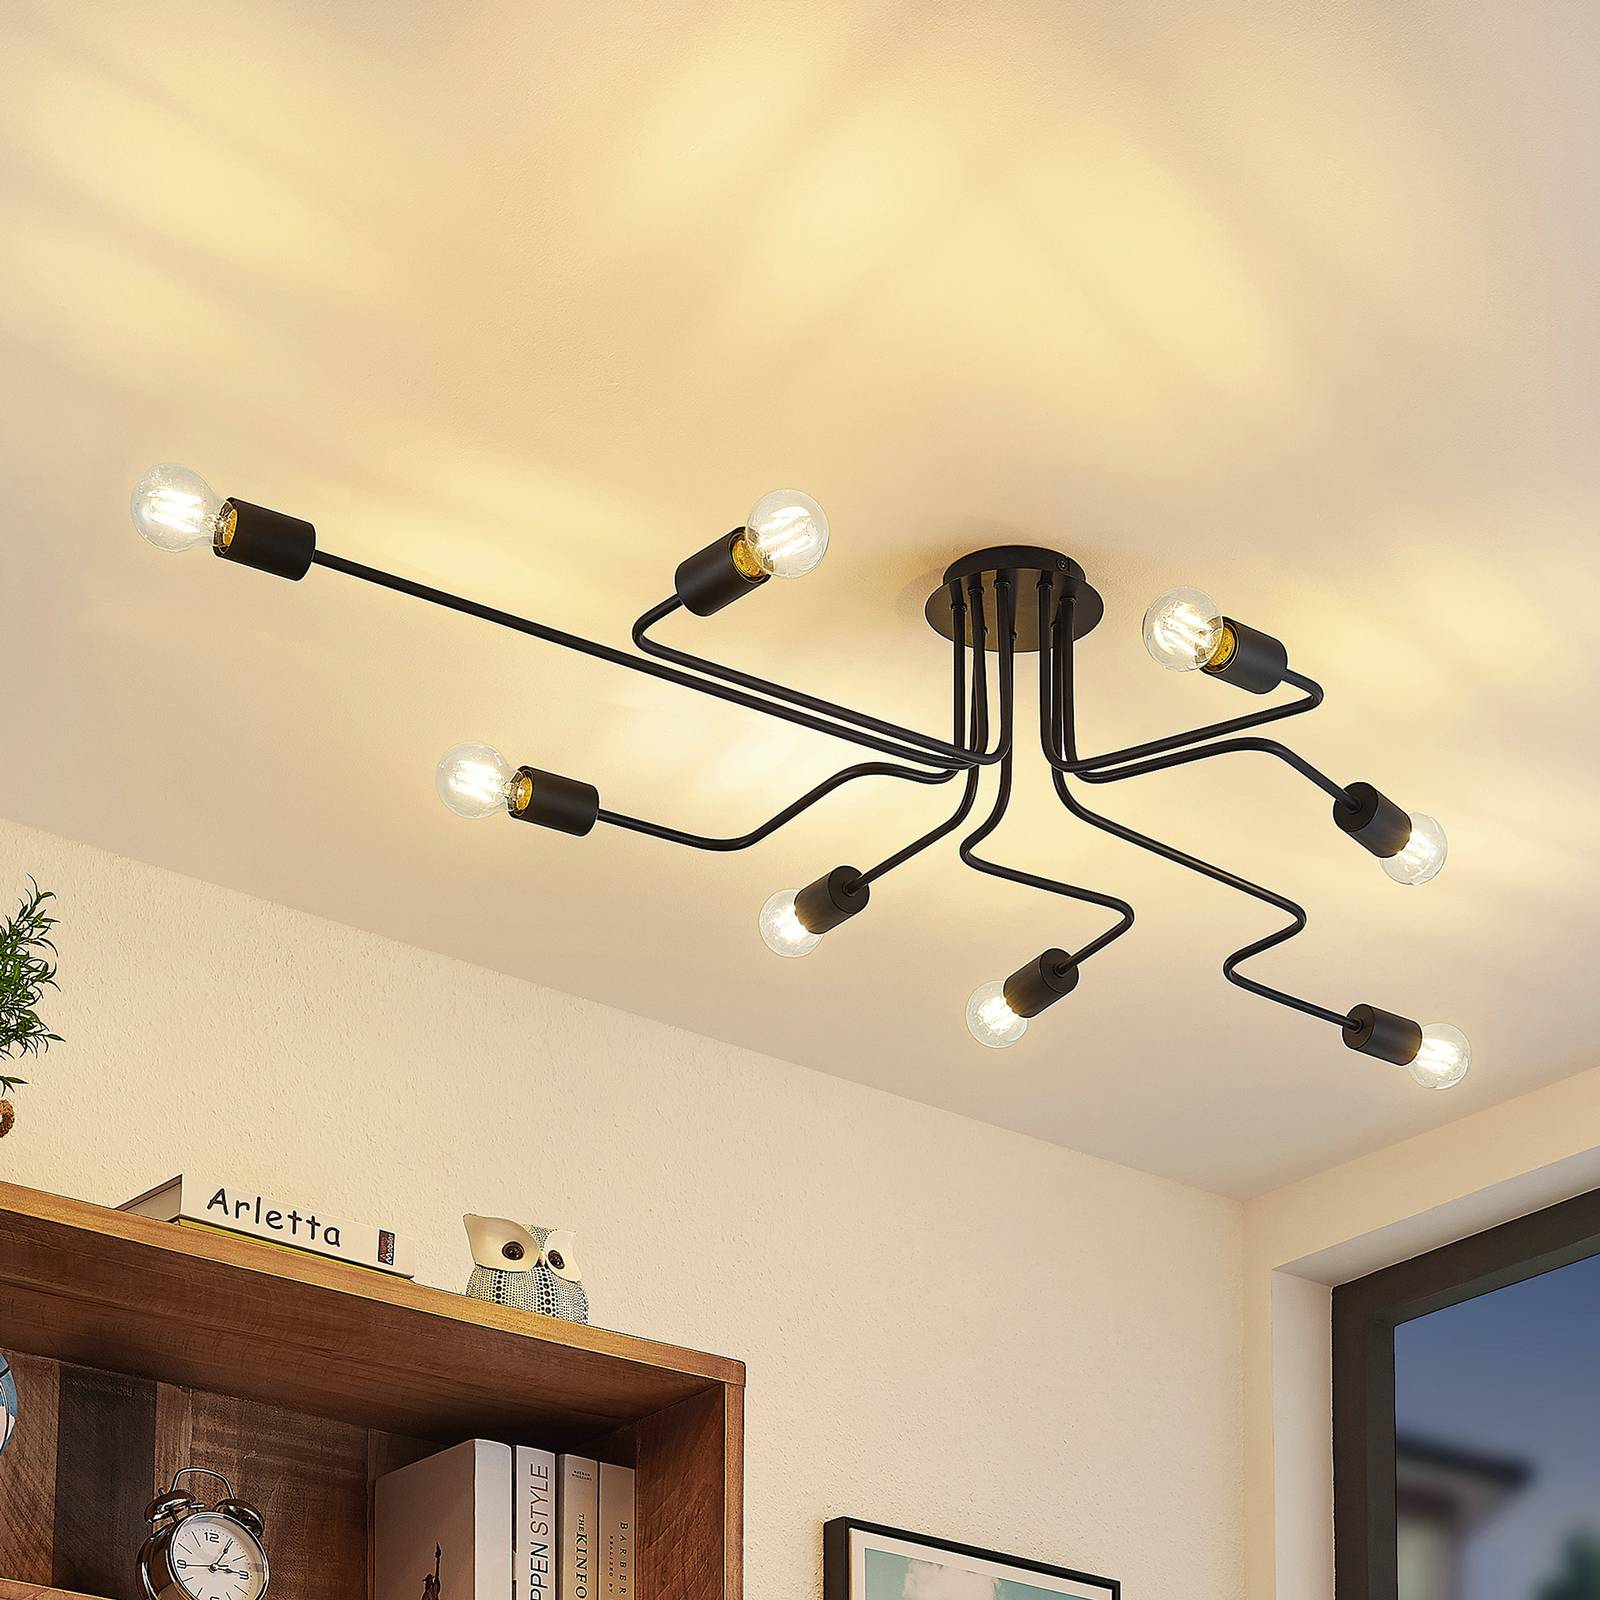 LED Plafond Deckenlampe INTEGRA Sensor 17W warmweiß 1000lm Deckenleuchte Lampe 